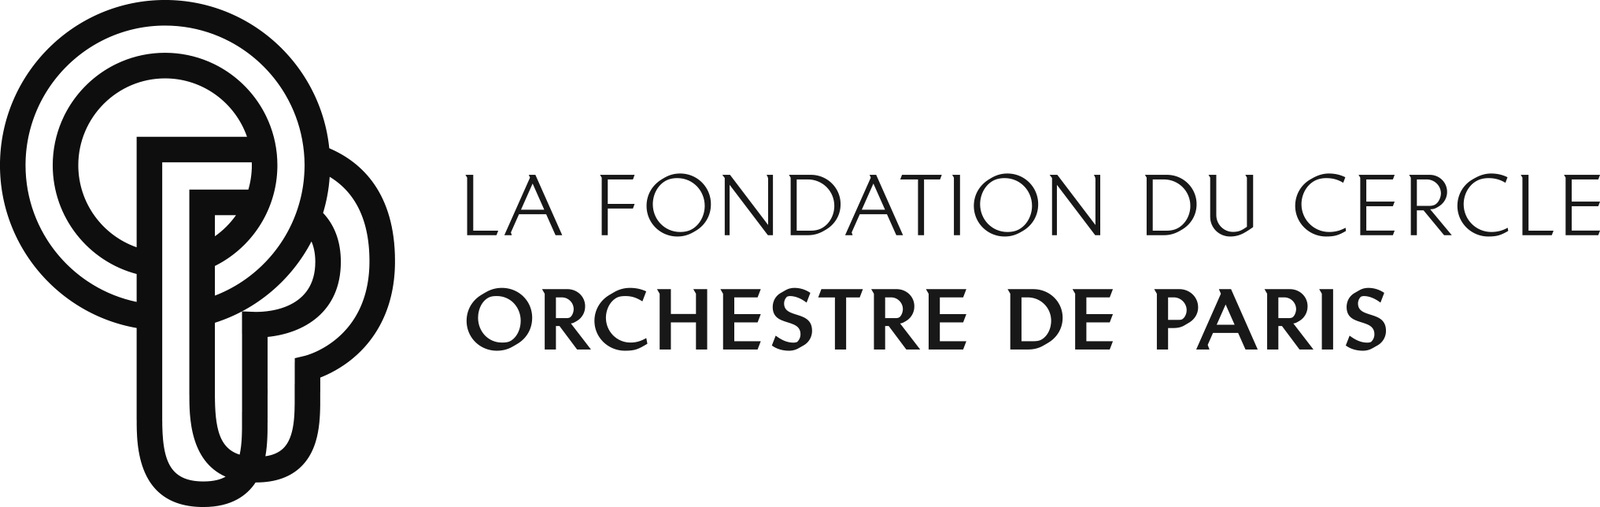 La Fondation du Cercle de l'Orchestre de Paris